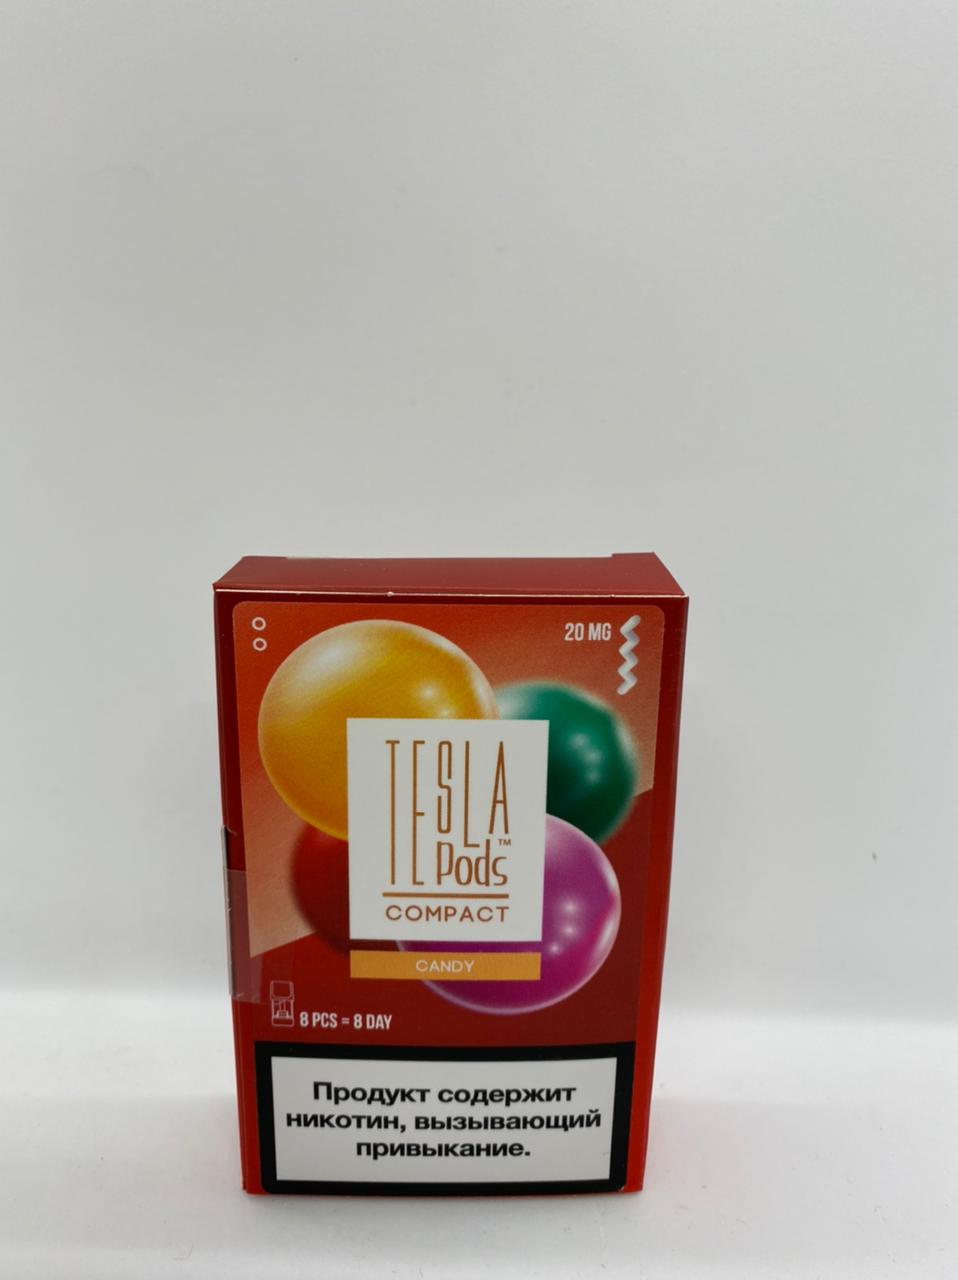 Набор TESLA pods Картридж Candy 2% (8 картриджей) compact для Logic с доставкой по Москве и России